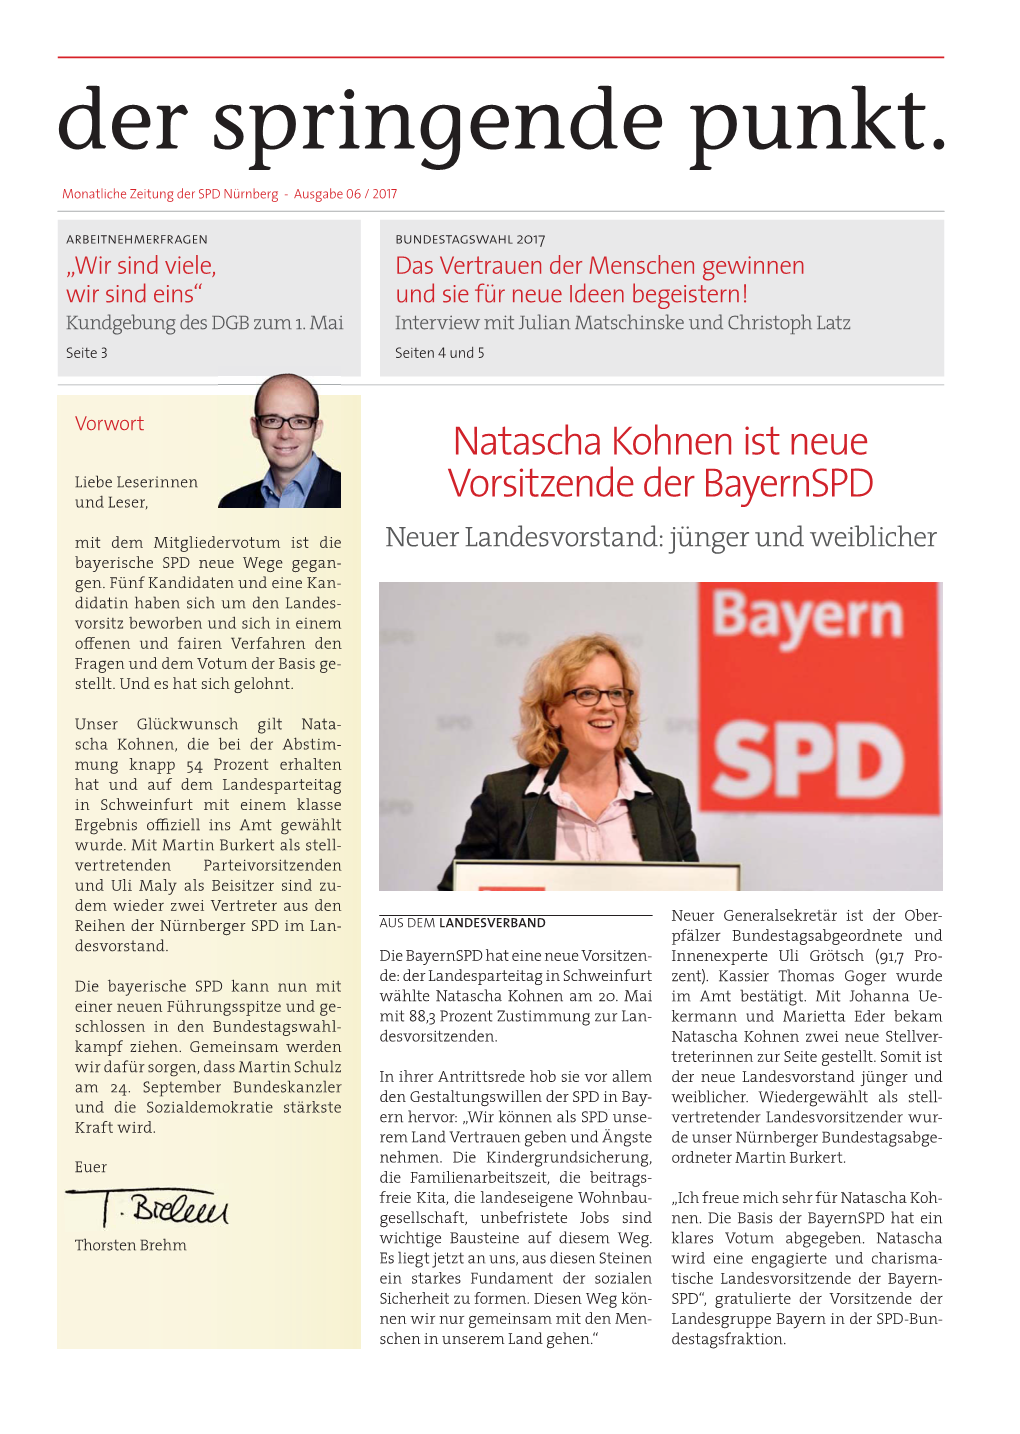 Natascha Kohnen Ist Neue Vorsitzende Der Bayernspd